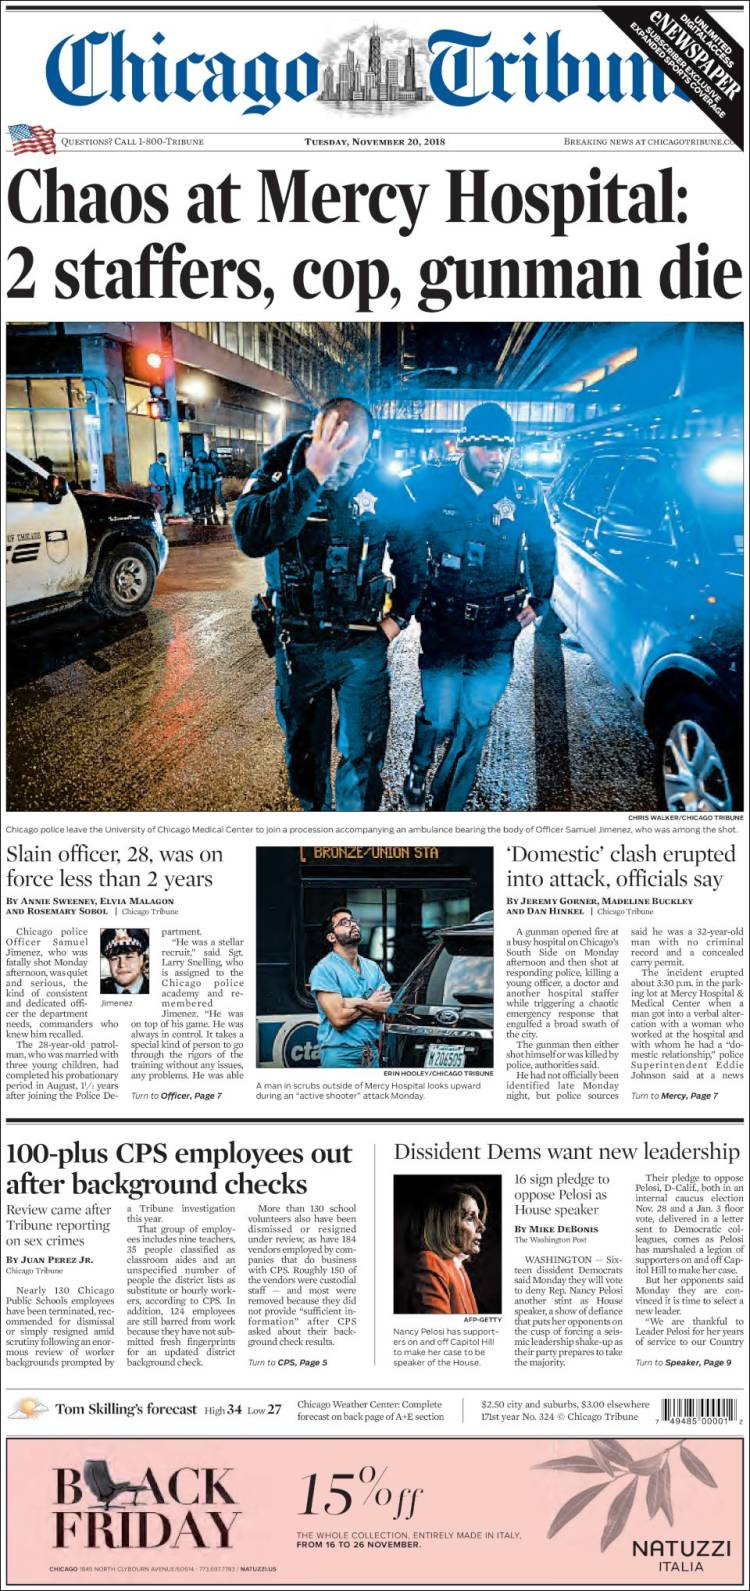 صفحه اول روزنامه شیکاگو تریبون/ هرج و مرج در بیمارستان مرسی